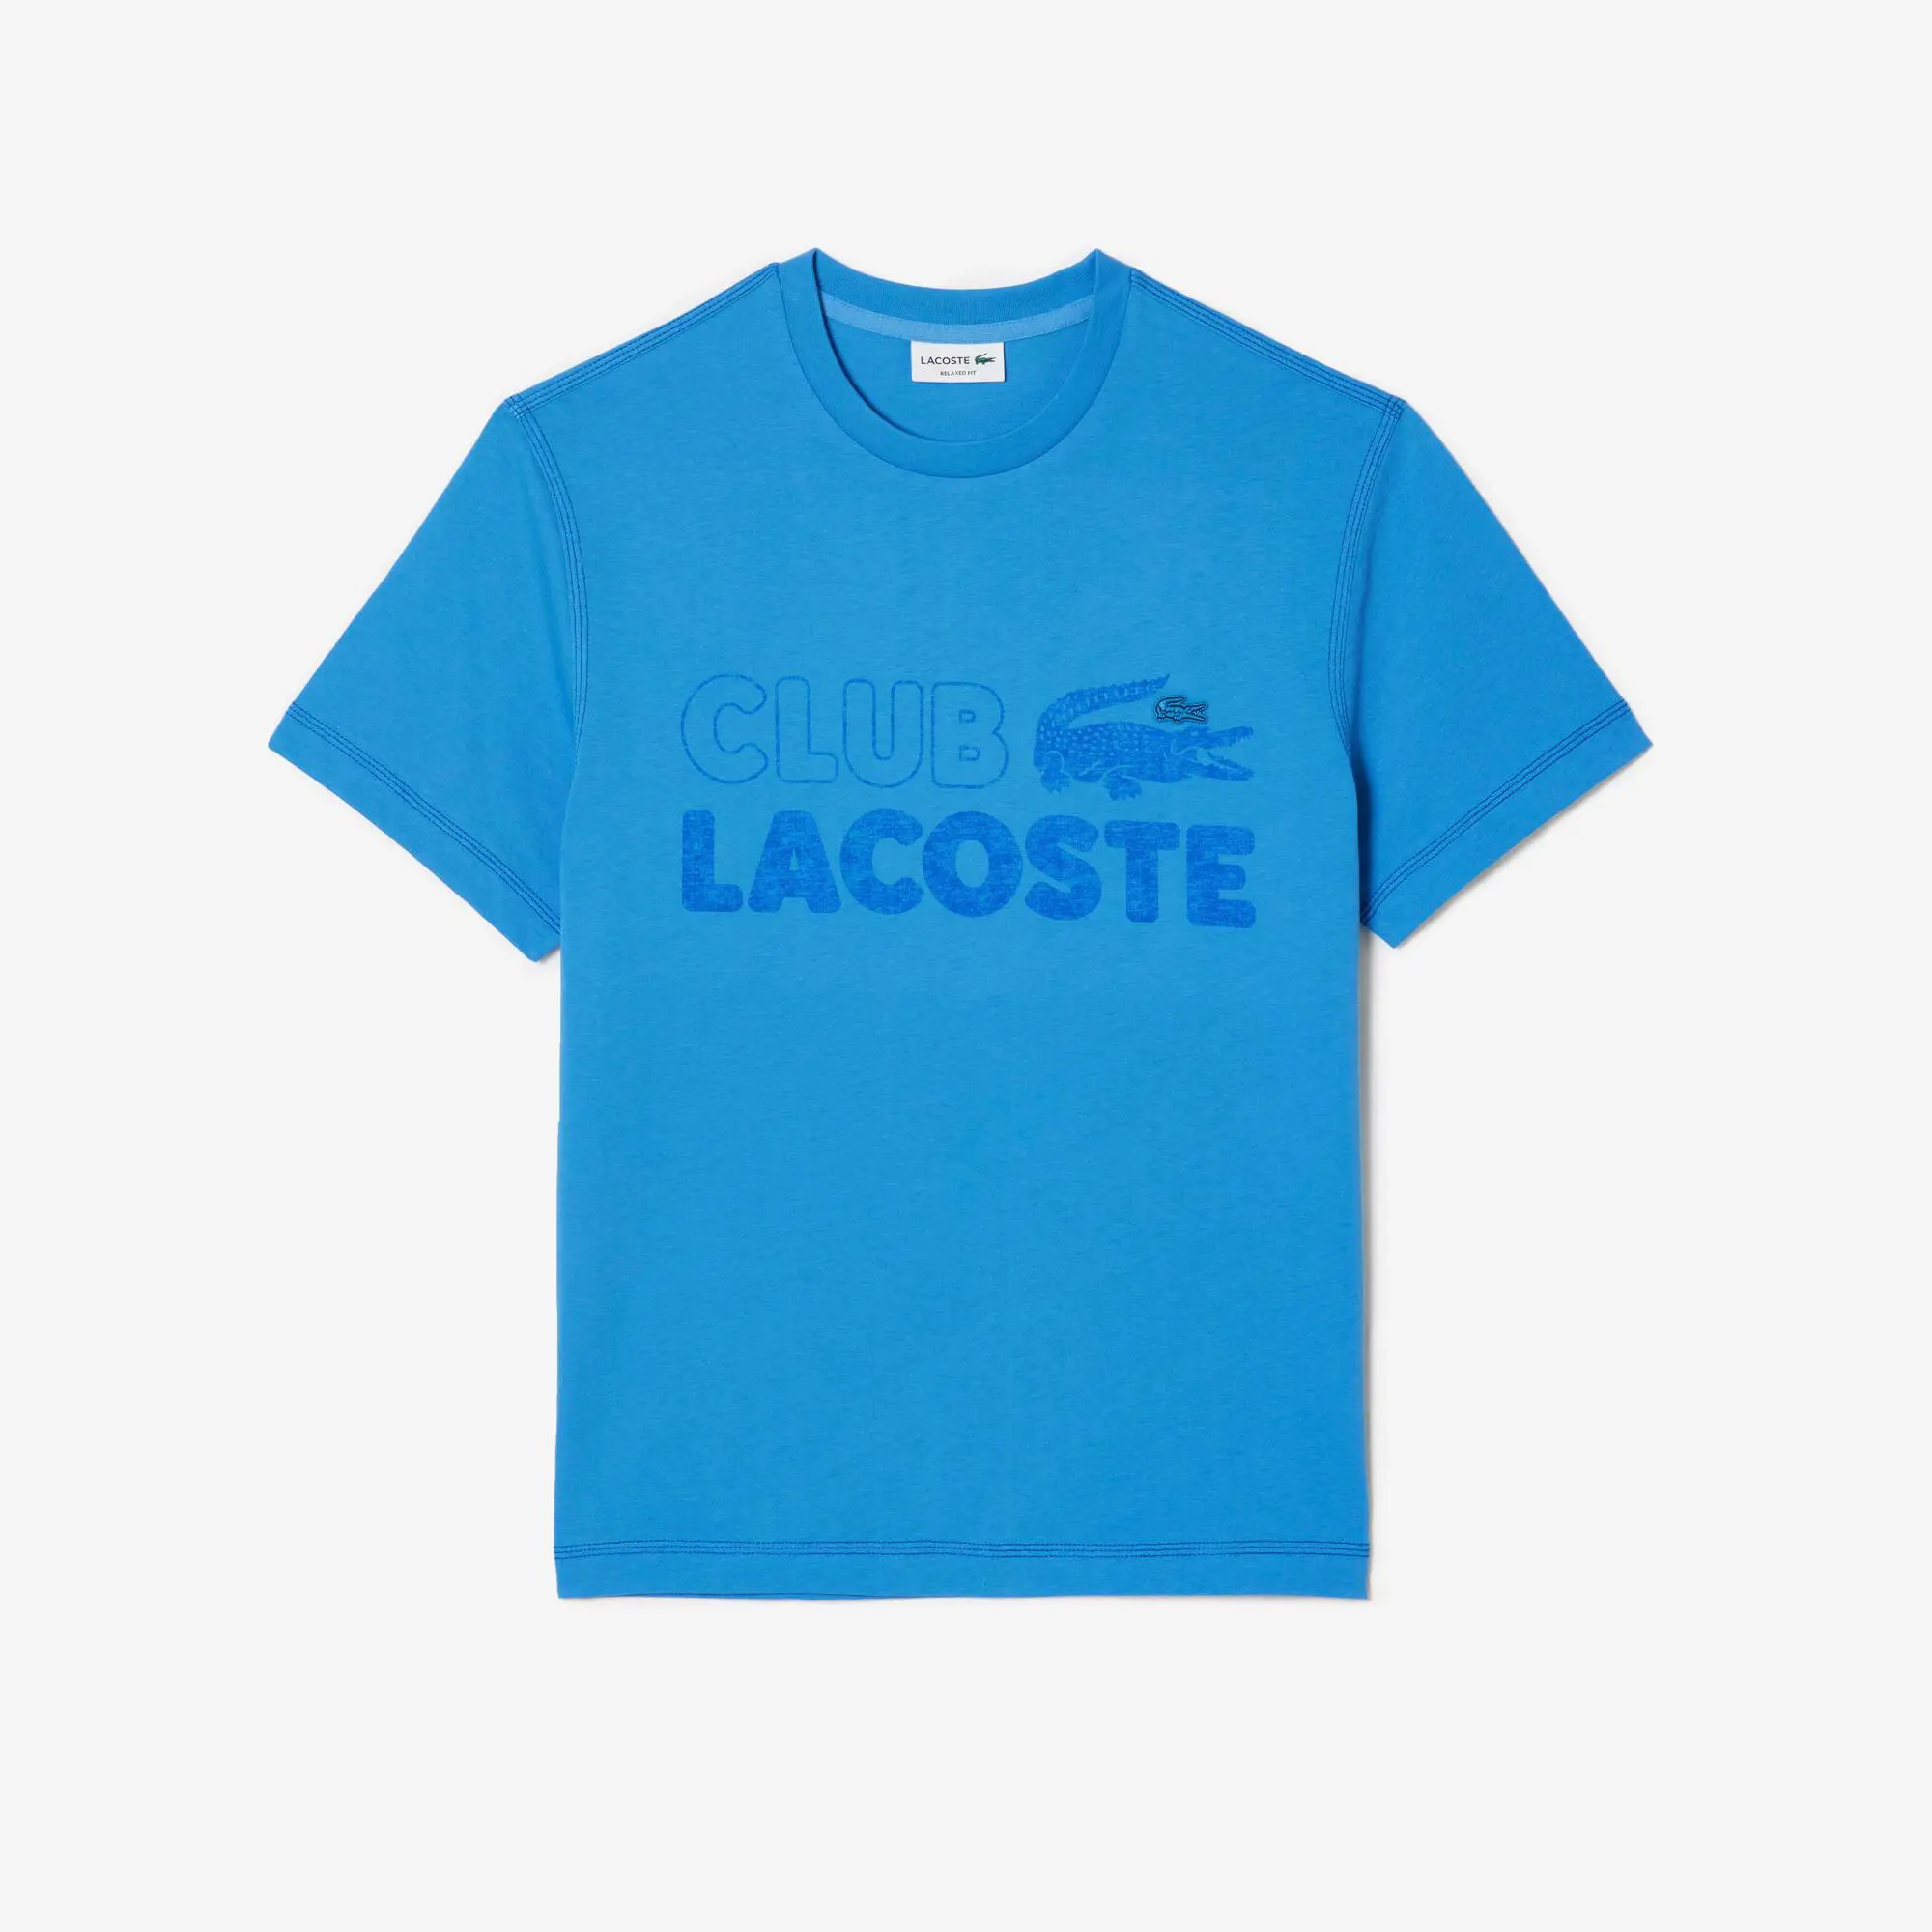 Lacoste Men’s Lacoste Vintage Print Organic Cotton T-shirt. 2